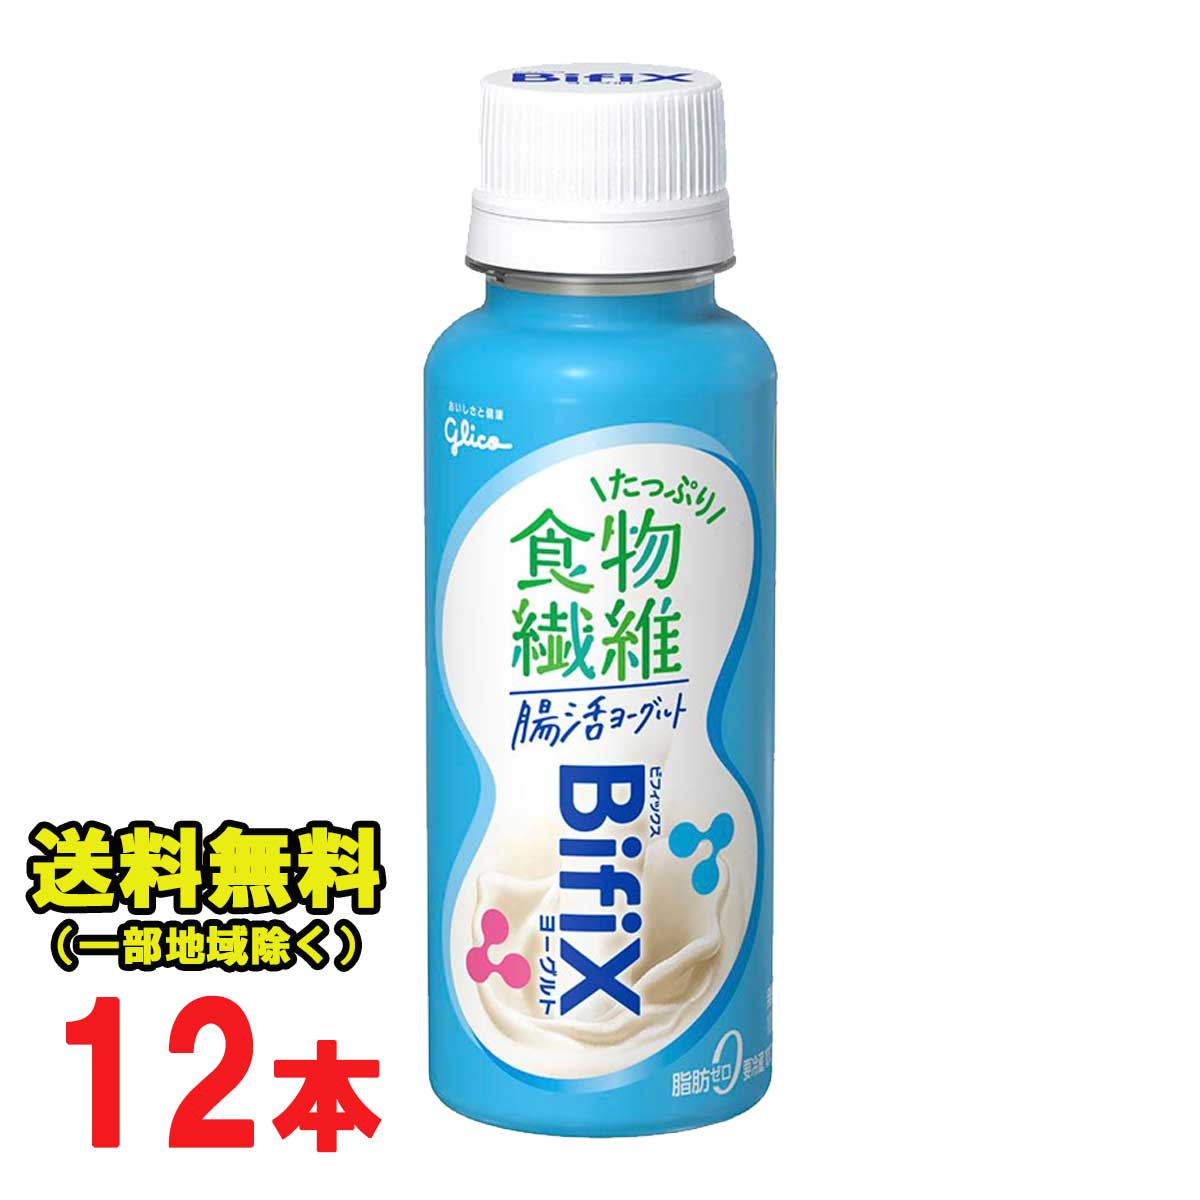 グリコ『BifiX腸活ヨーグルト-食物繊維たっぷり-』